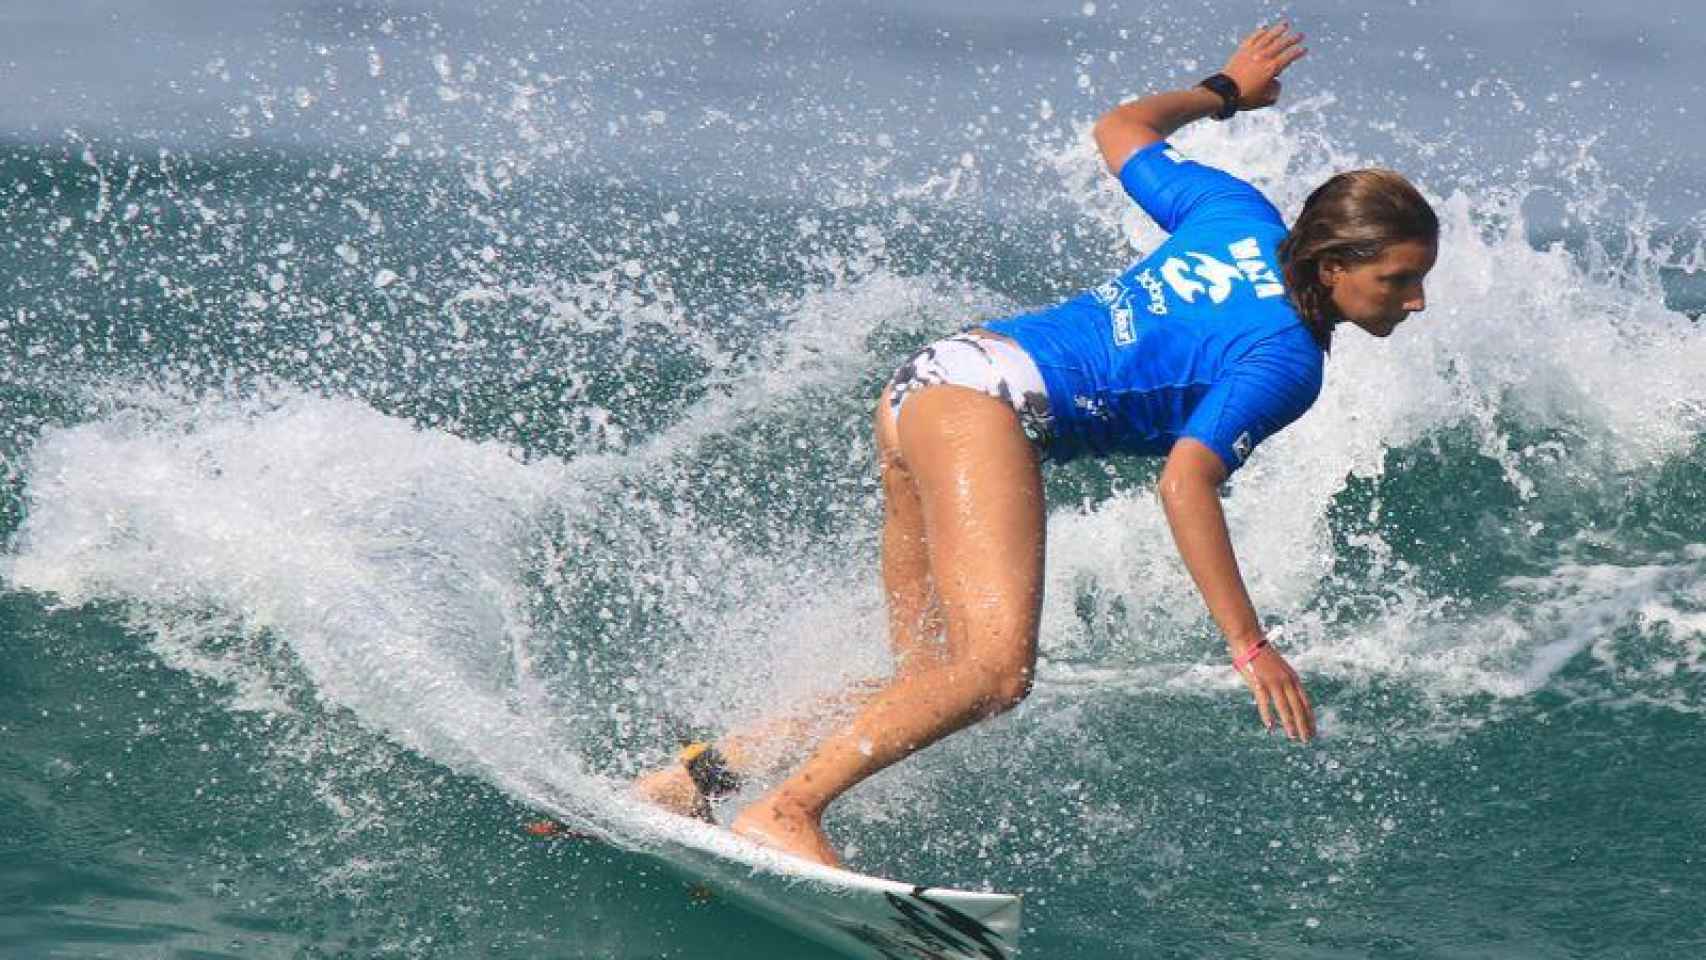 Ejercicios para perder peso y tonificar: el paddle surf, el